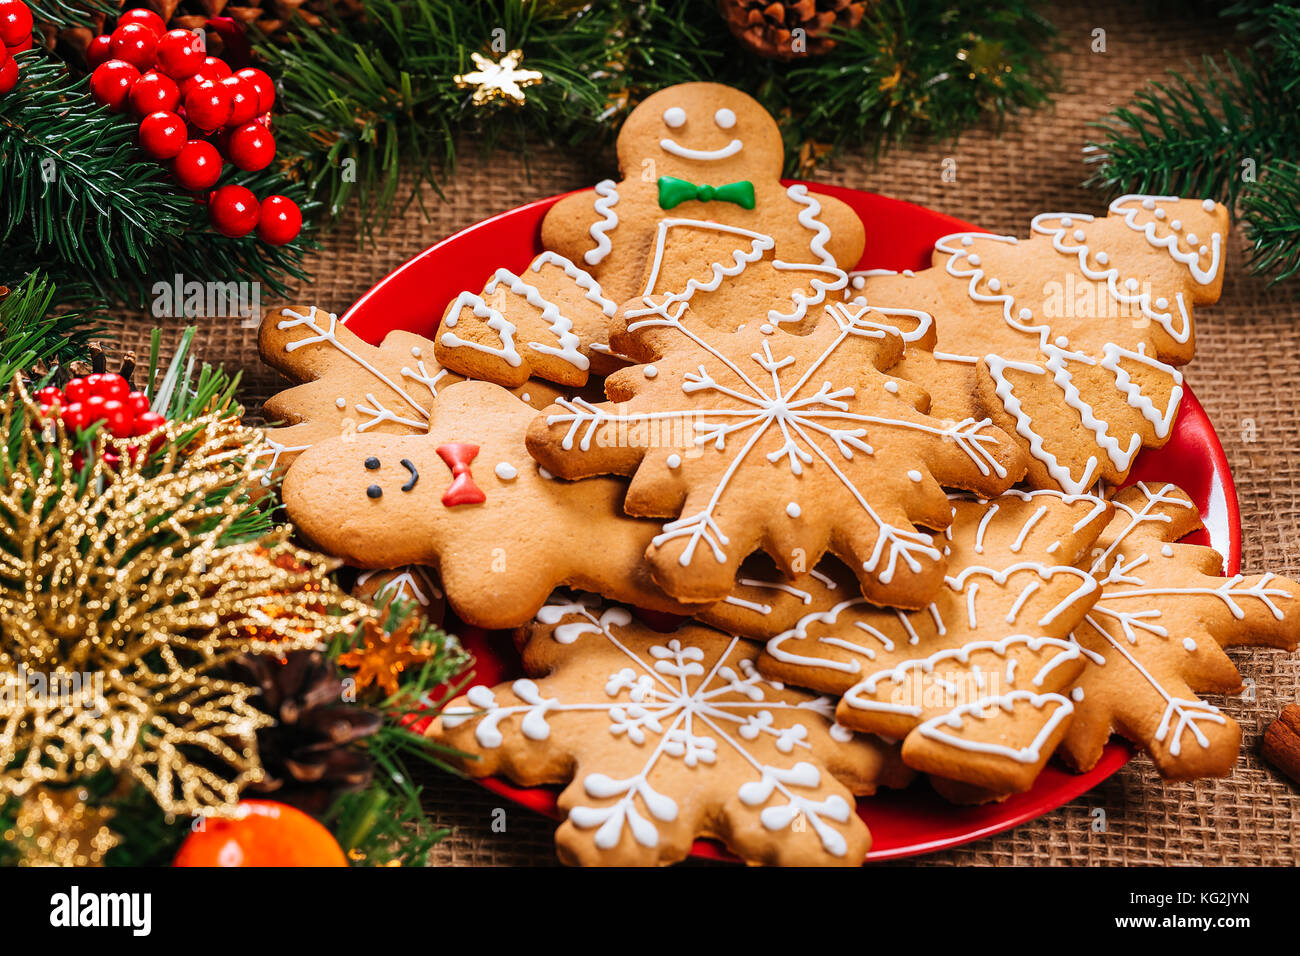 Il natale di panpepato biscotti fatti in casa nel piatto rosso con rami di albero di Natale e Anno nuovo decor e sul tavolo con tovaglia di tela. merry christma Foto Stock